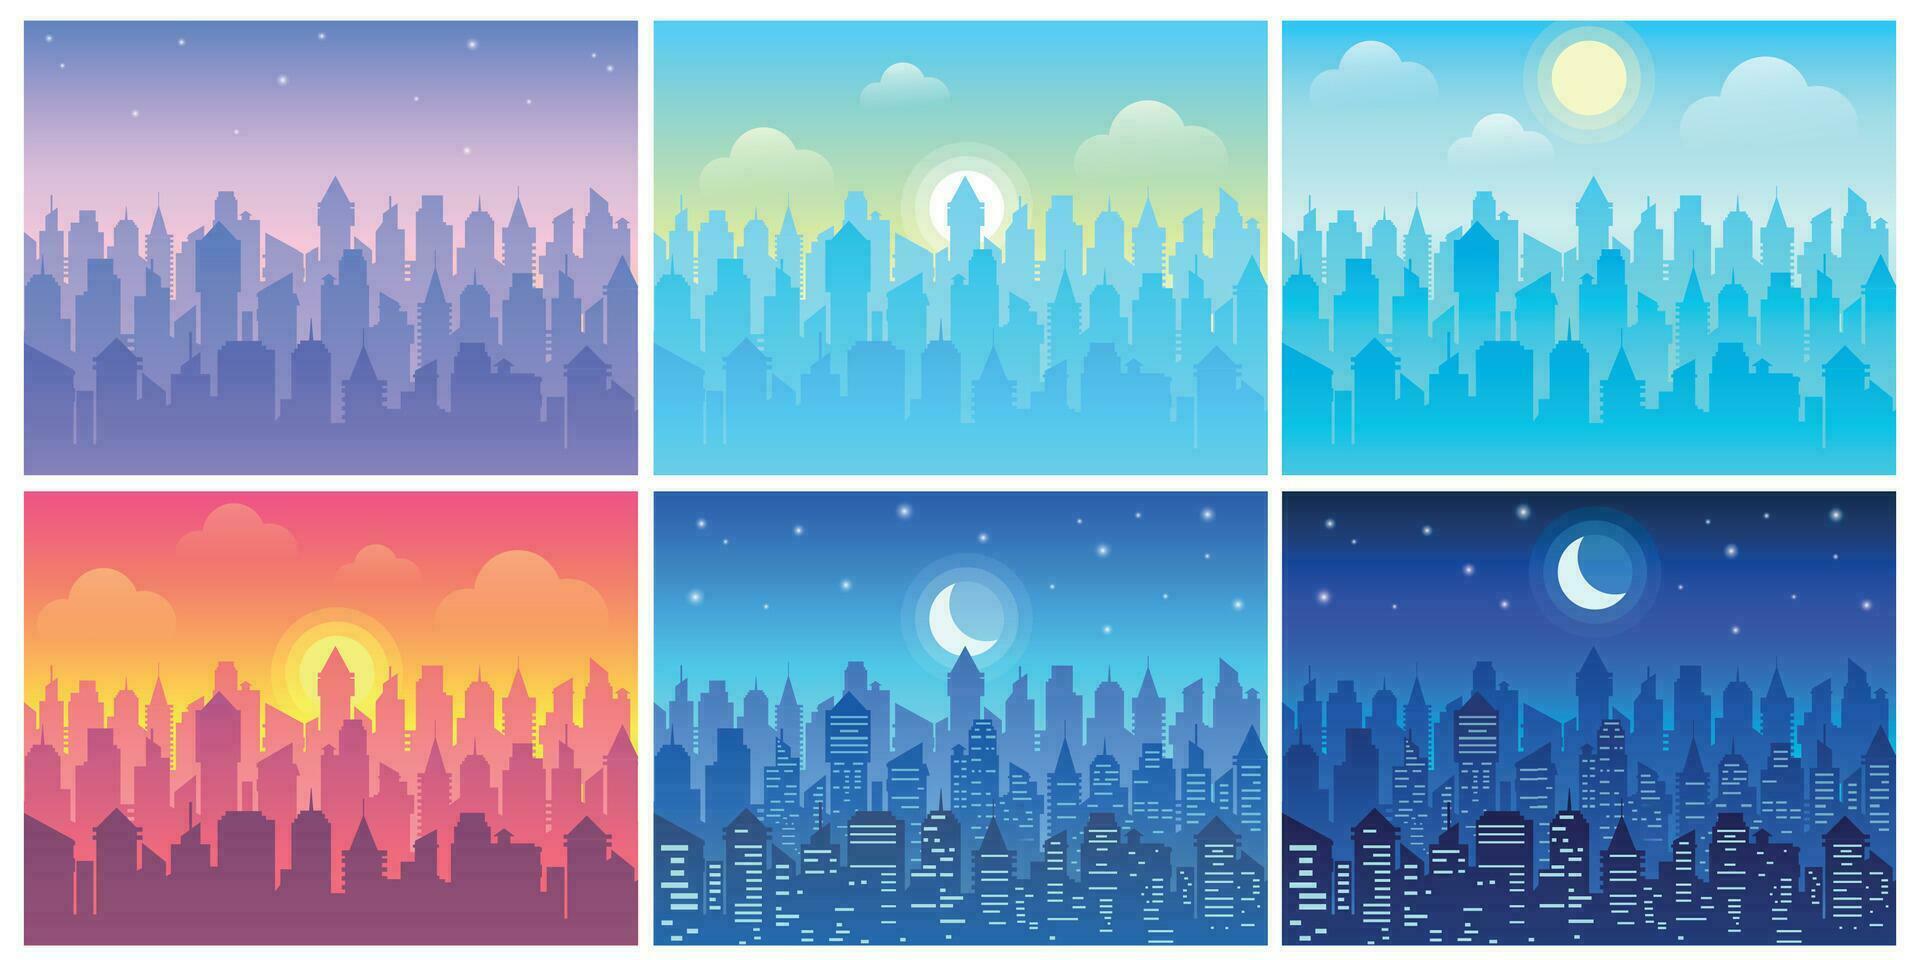 Tag Zeit Stadtbild. Veränderung von Zeit von Tag, Morgen Stadt, Dorf und Nacht Stadt Horizont Vektor Illustration einstellen